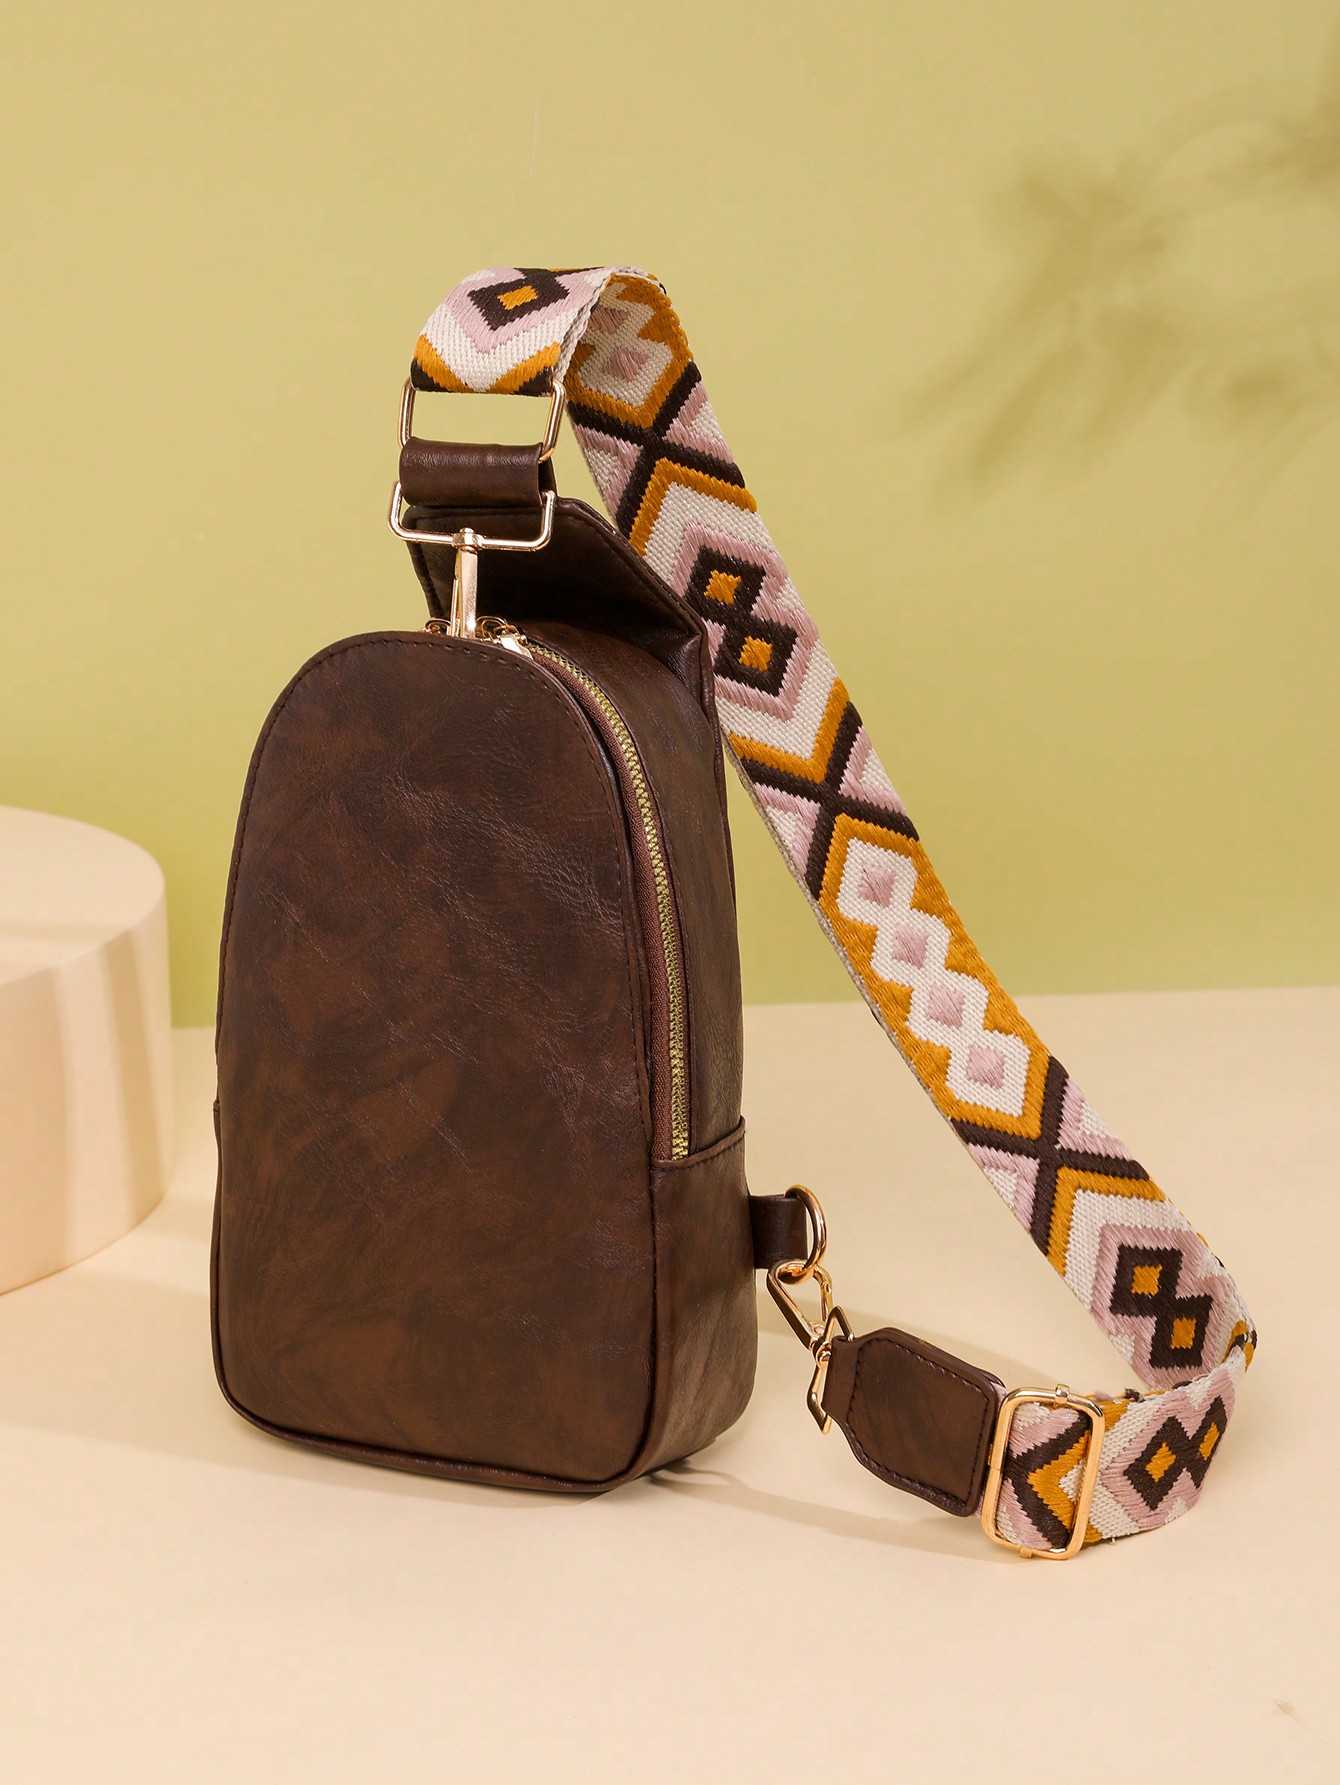 цена Сумка-слинг для женщин Сумка-слинг из искусственной кожи Маленький рюкзак через плечо Модная нагрудная сумка для путешествий, кофейный коричневый